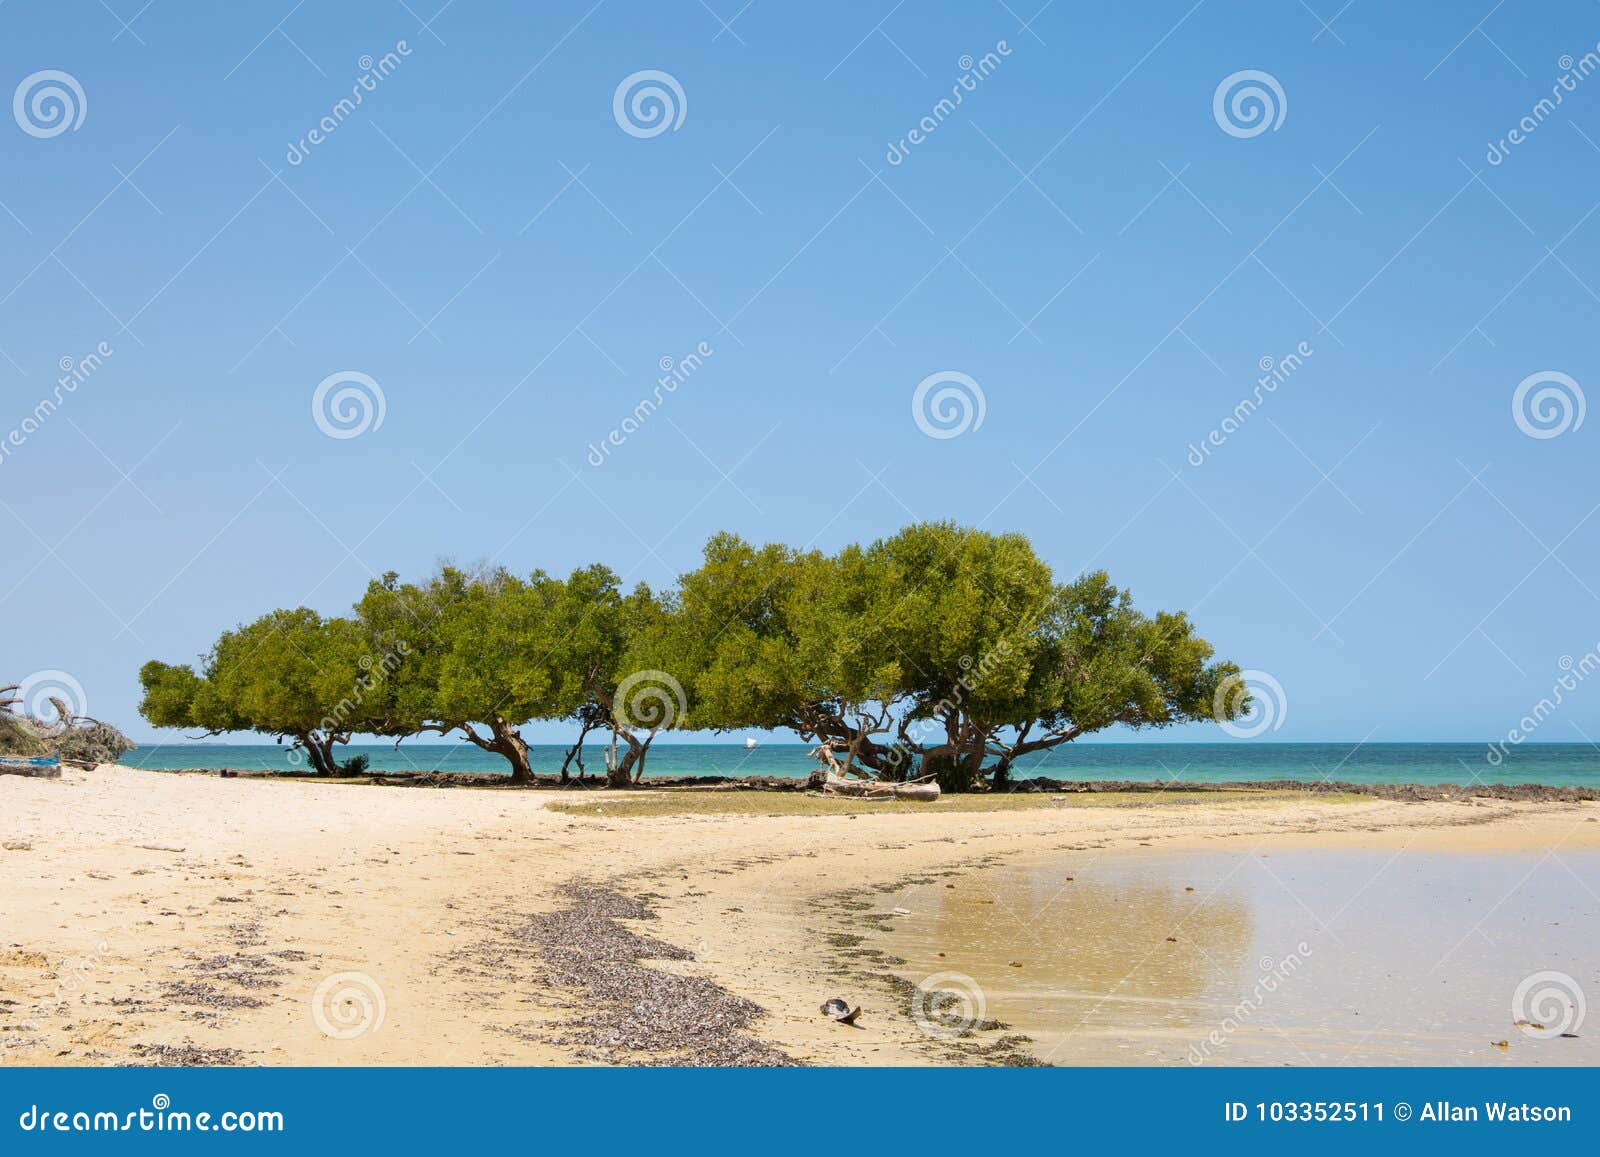 Details 48 árboles que crecen en la playa